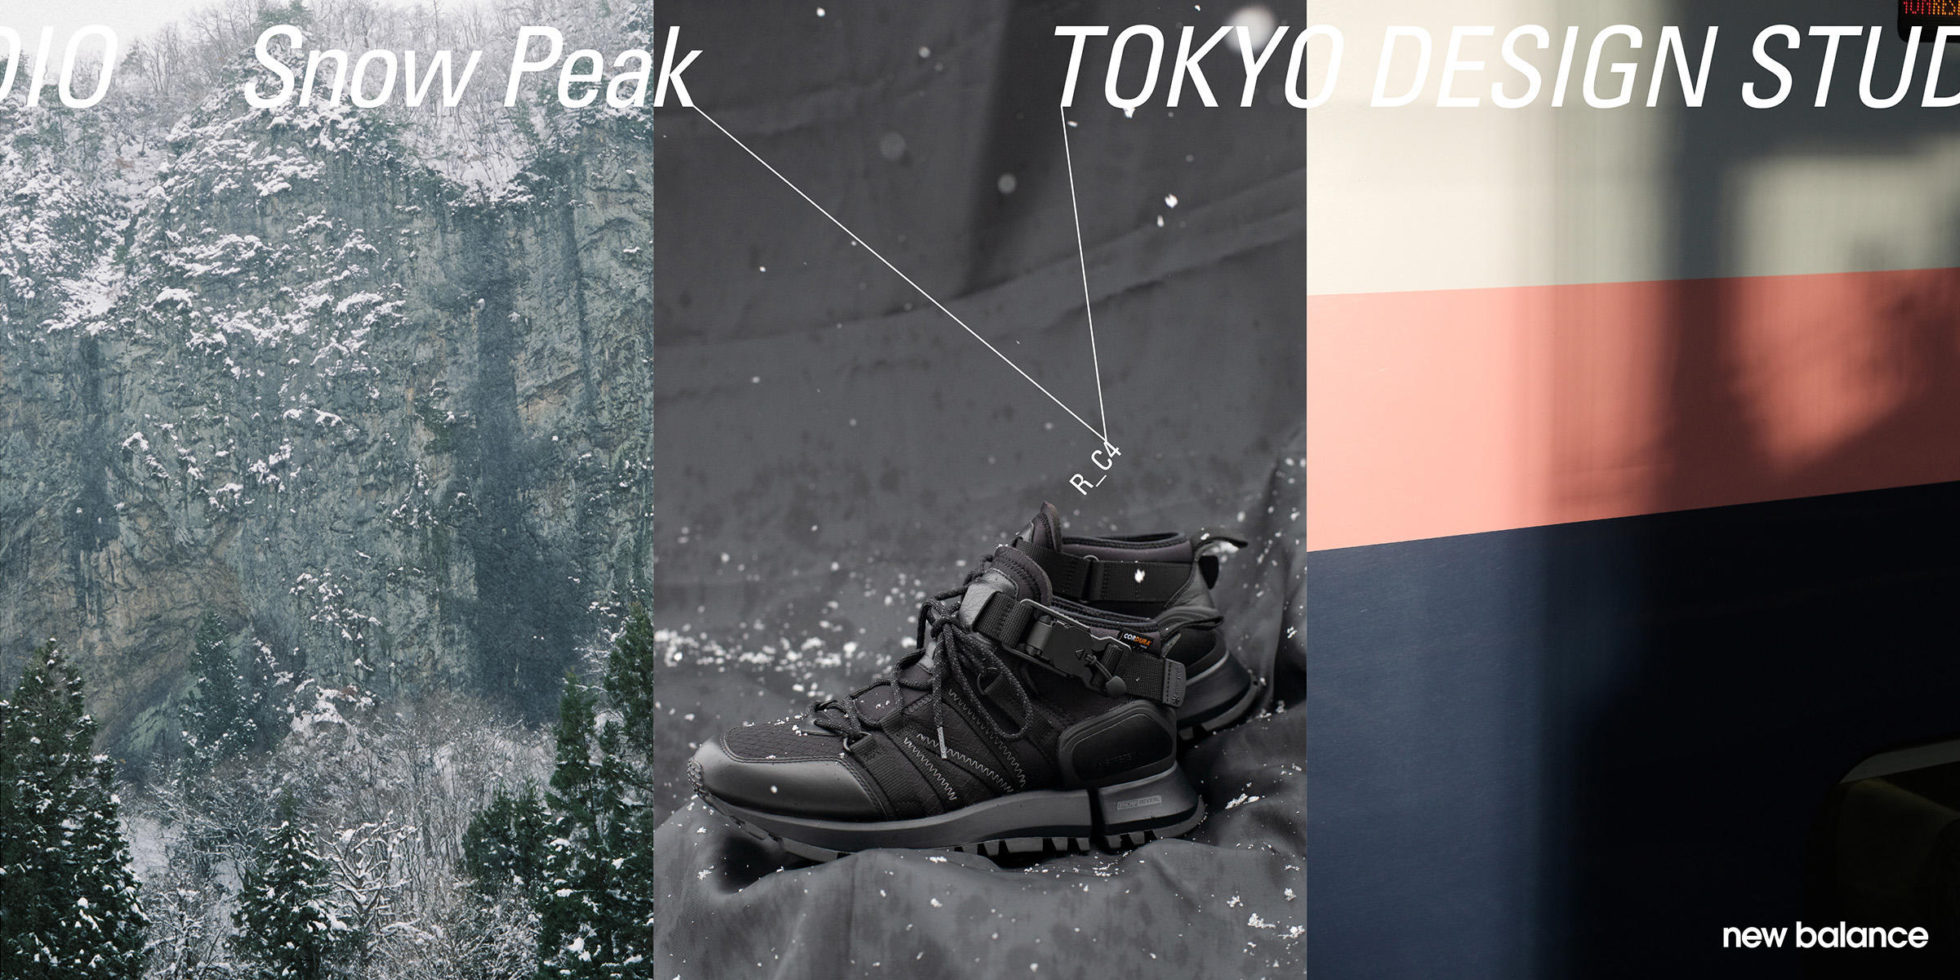 Snow Peak × TOKYO DESIGN STUDIO New Balance R_C4 Capsule ...